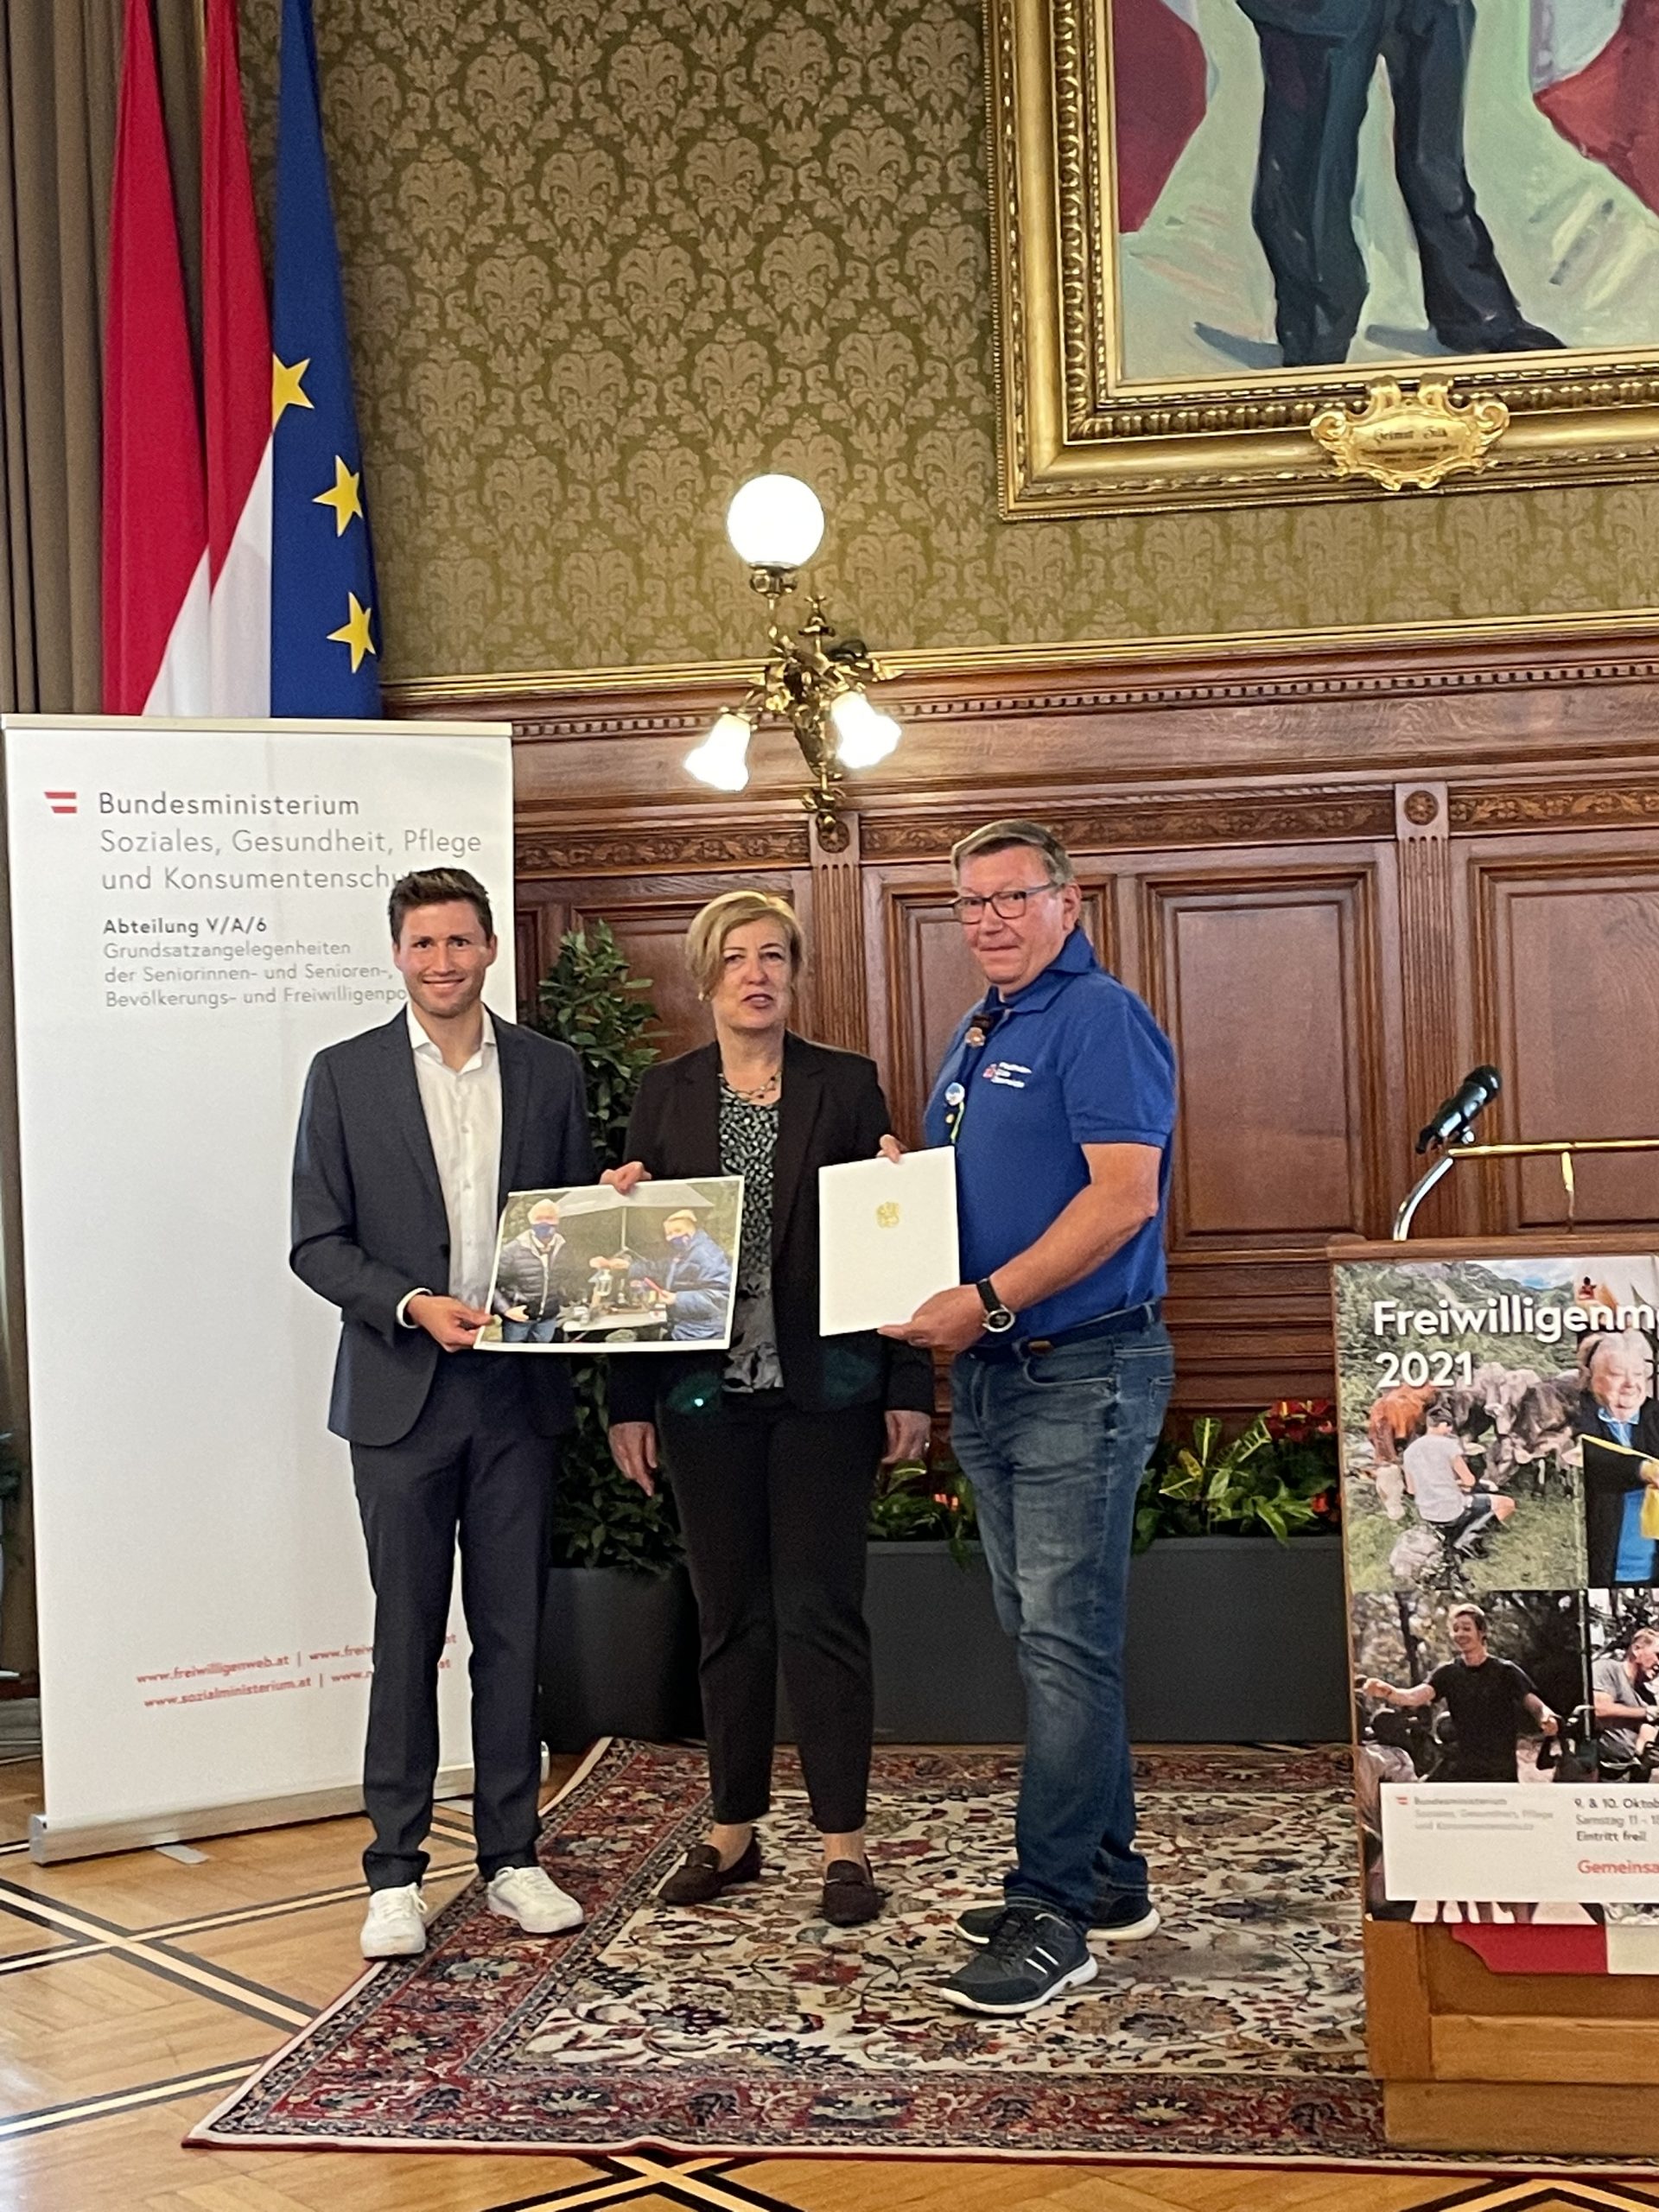 Auszeichnung für die Pfadfinder-Gilde Österreichs im Wiener Rathaus im Rahmen der 9. Wiener Freiwilligenmesse